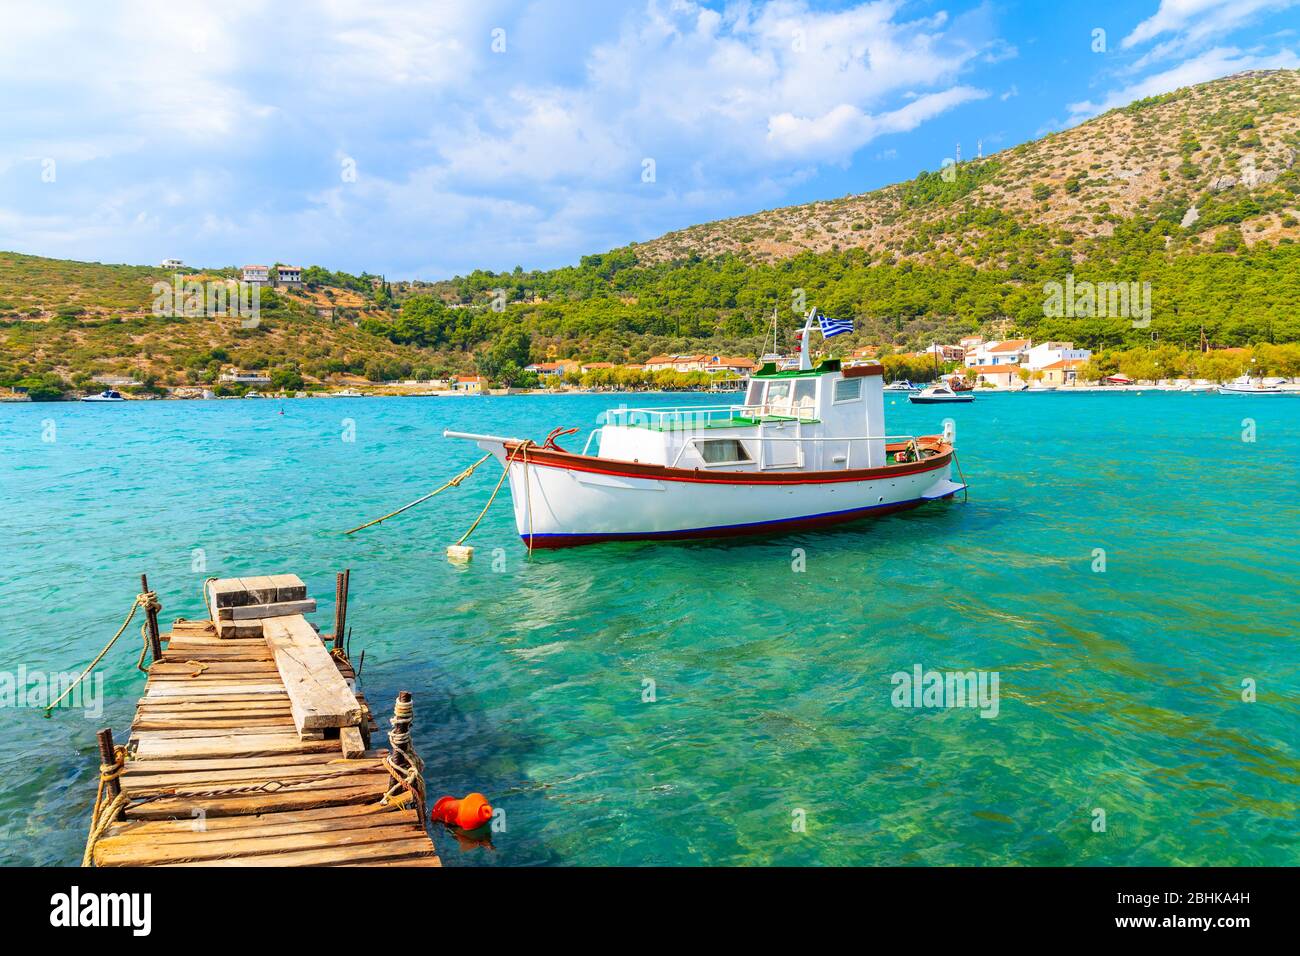 Muelle de madera y colorido barco pesquero griego en el mar turquesa en la bahía de Posidonio, isla de Samos, Grecia Foto de stock